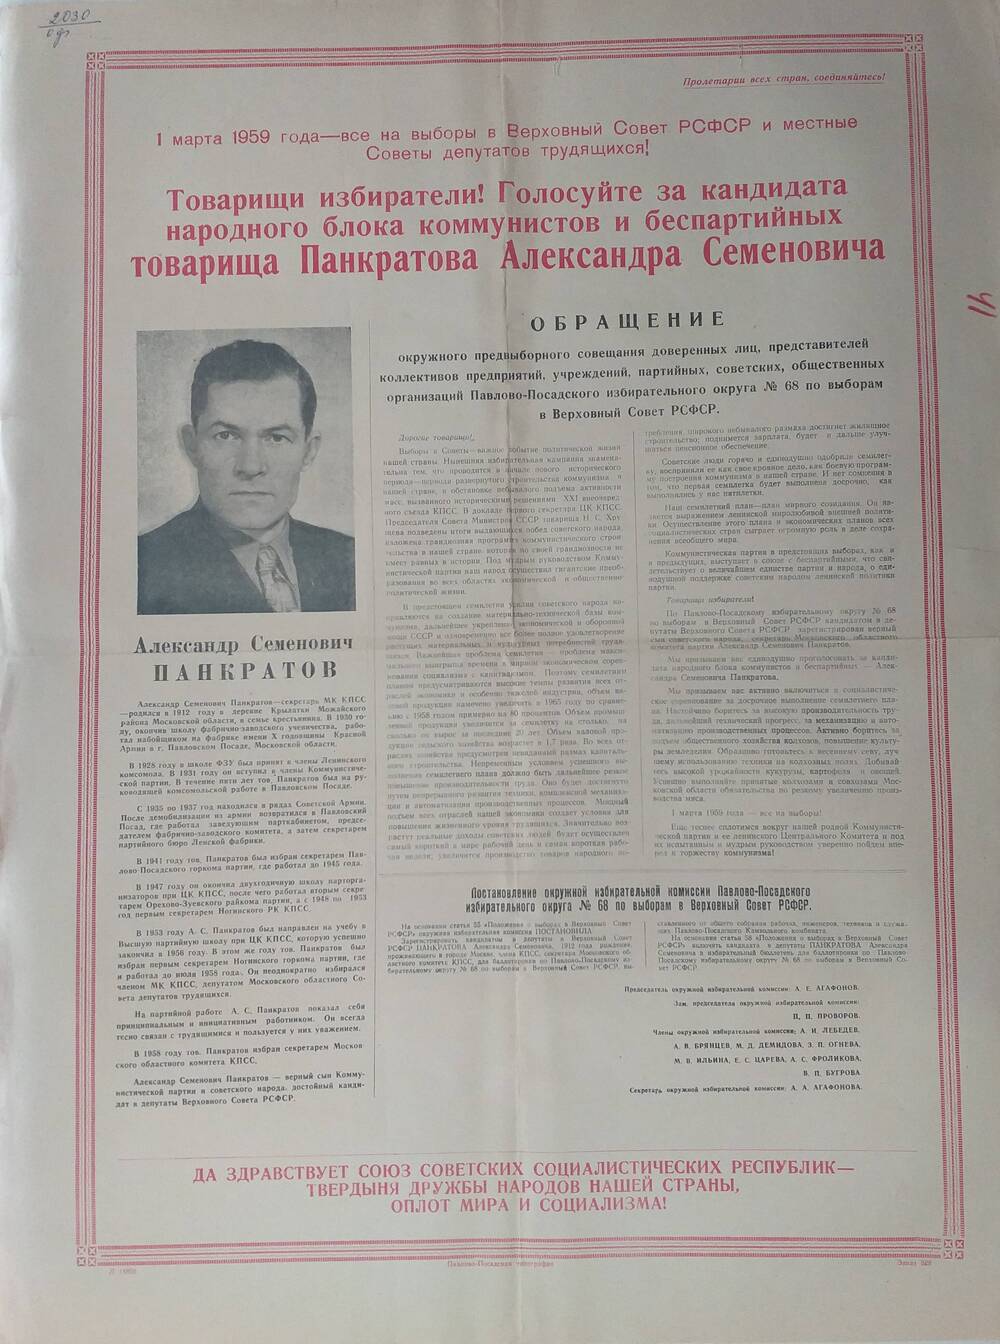 Плакат Призыв к голосованию на выборах 1 марта 1959 года за товарища Панкратова Александра Семёновича - секретаря Московского областного комитета КПСС, января 1959 года.